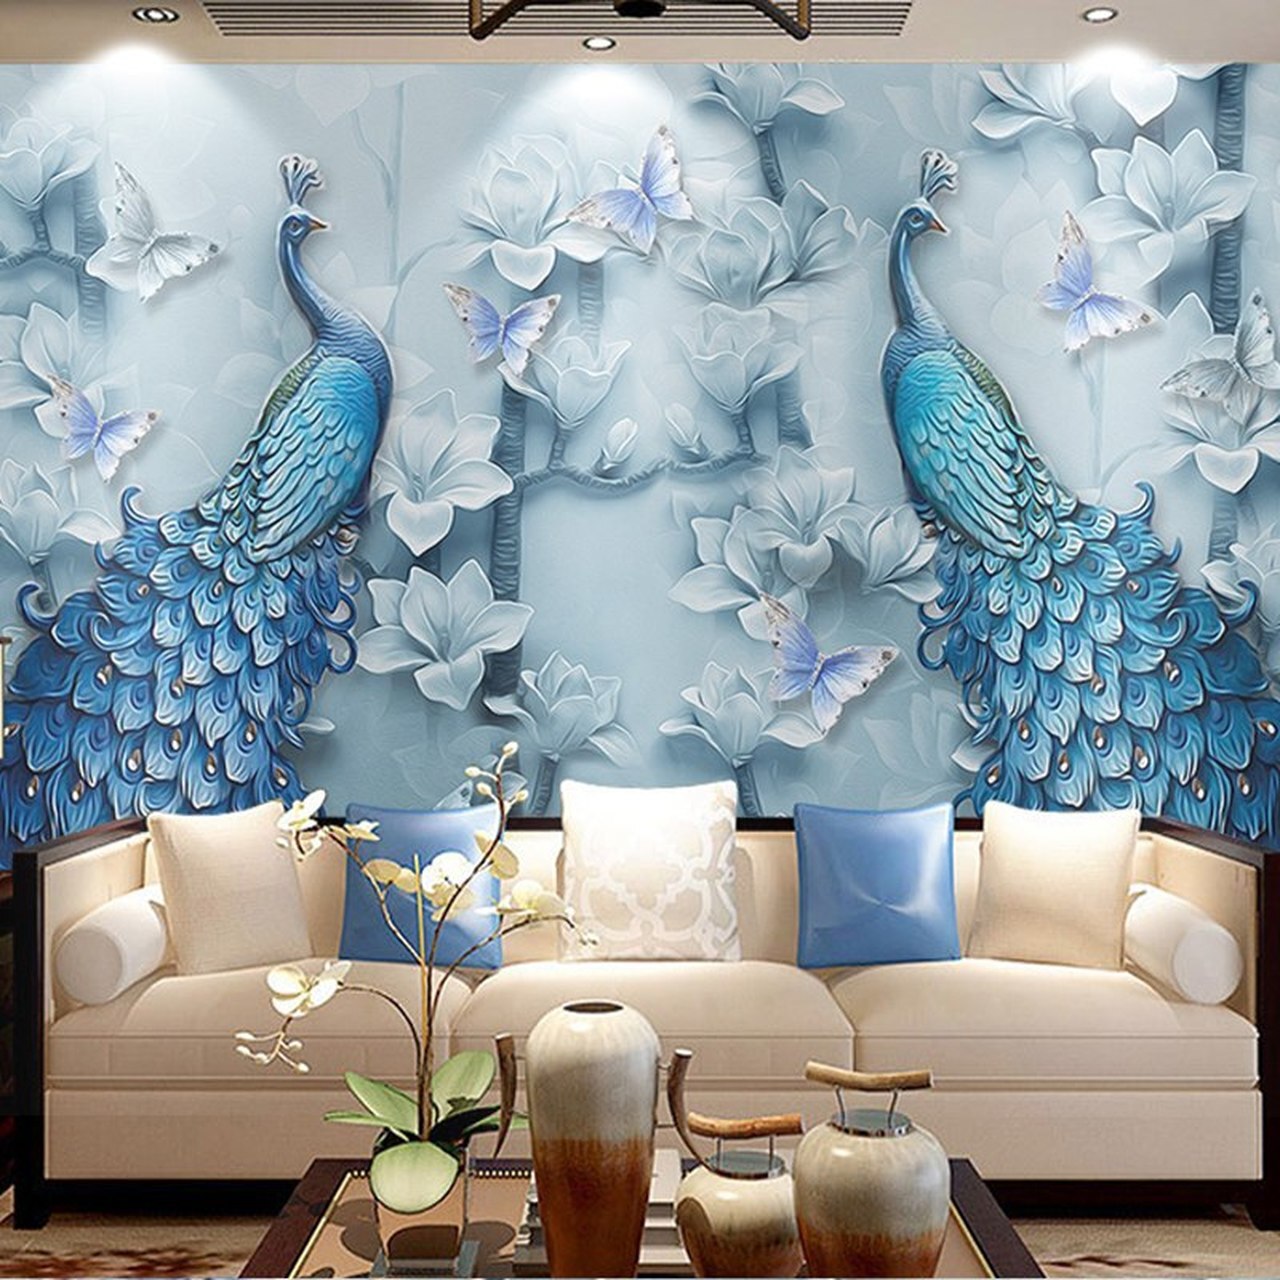 Shutterstock 3d Wallpaper Peacock - 1280x1280 Wallpaper 